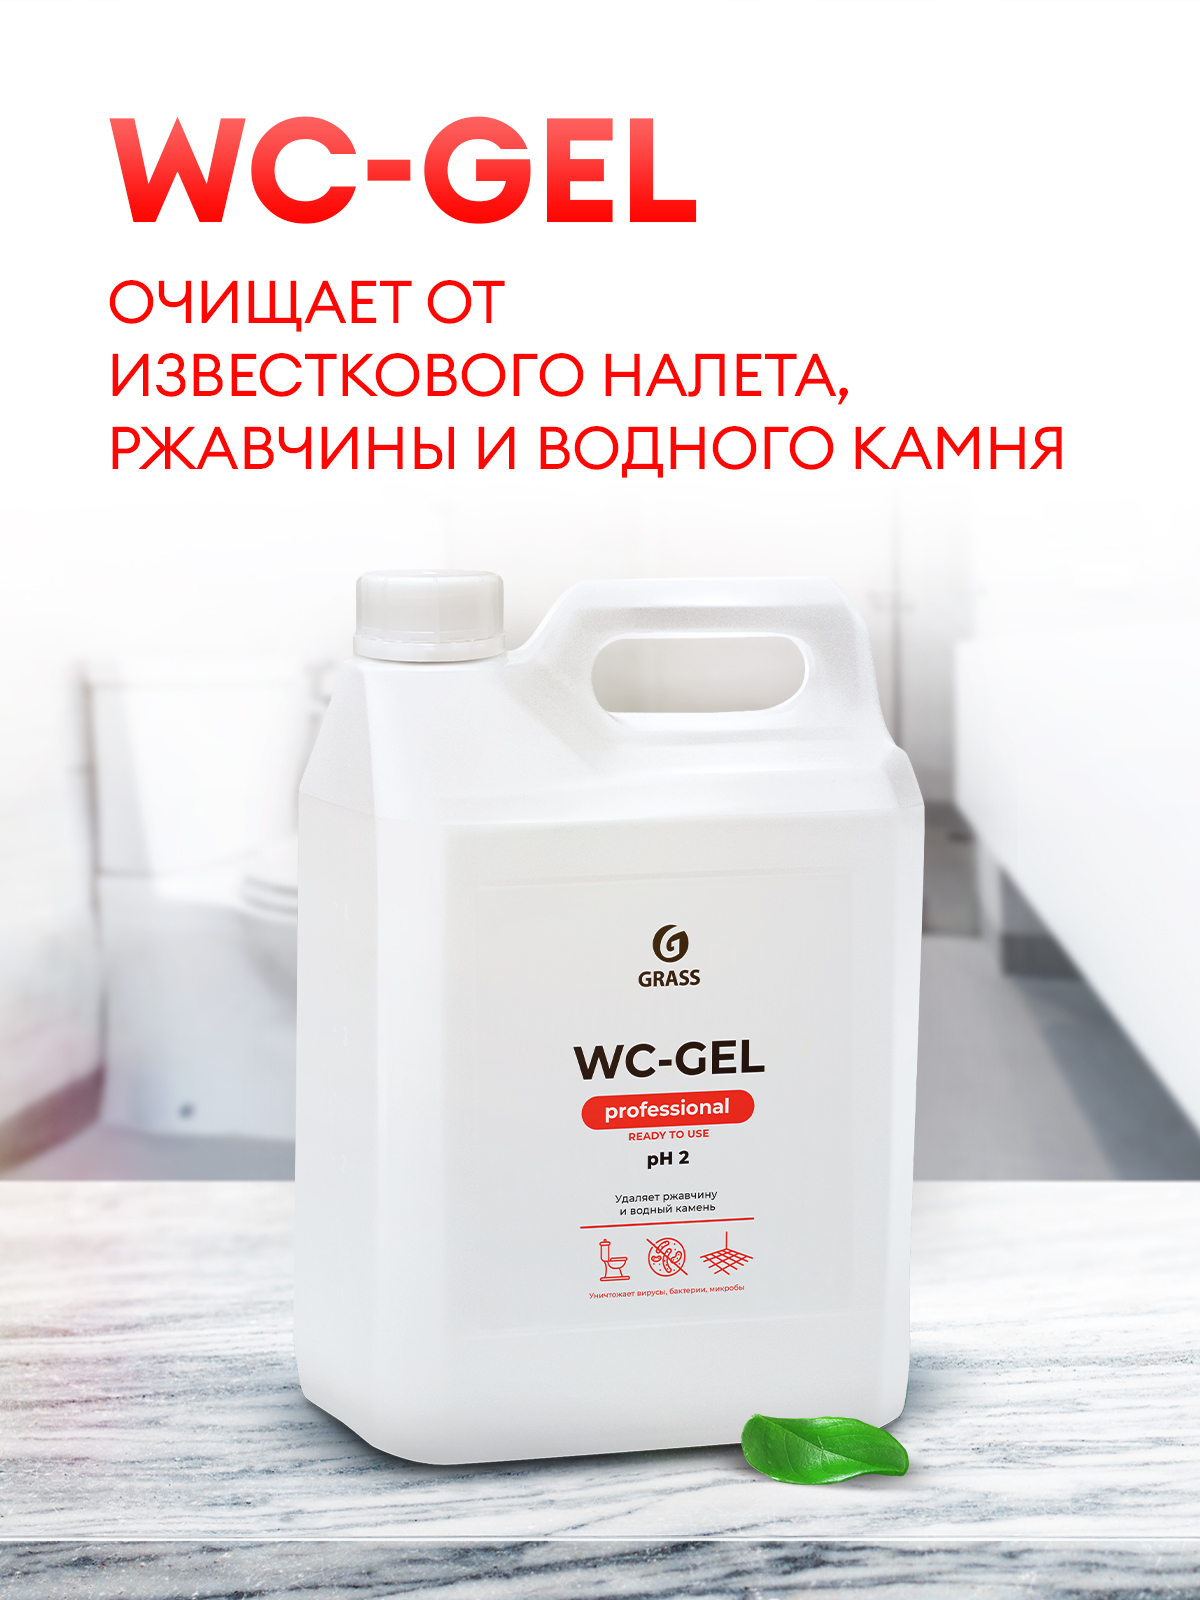 Wc gel professional. Средство для чистки сантехники "WS-Gel" 5л. Grass WS Gel средство для чистки сантехники. Gel + Грасс 5л. Чистин WC гель для сантехники.